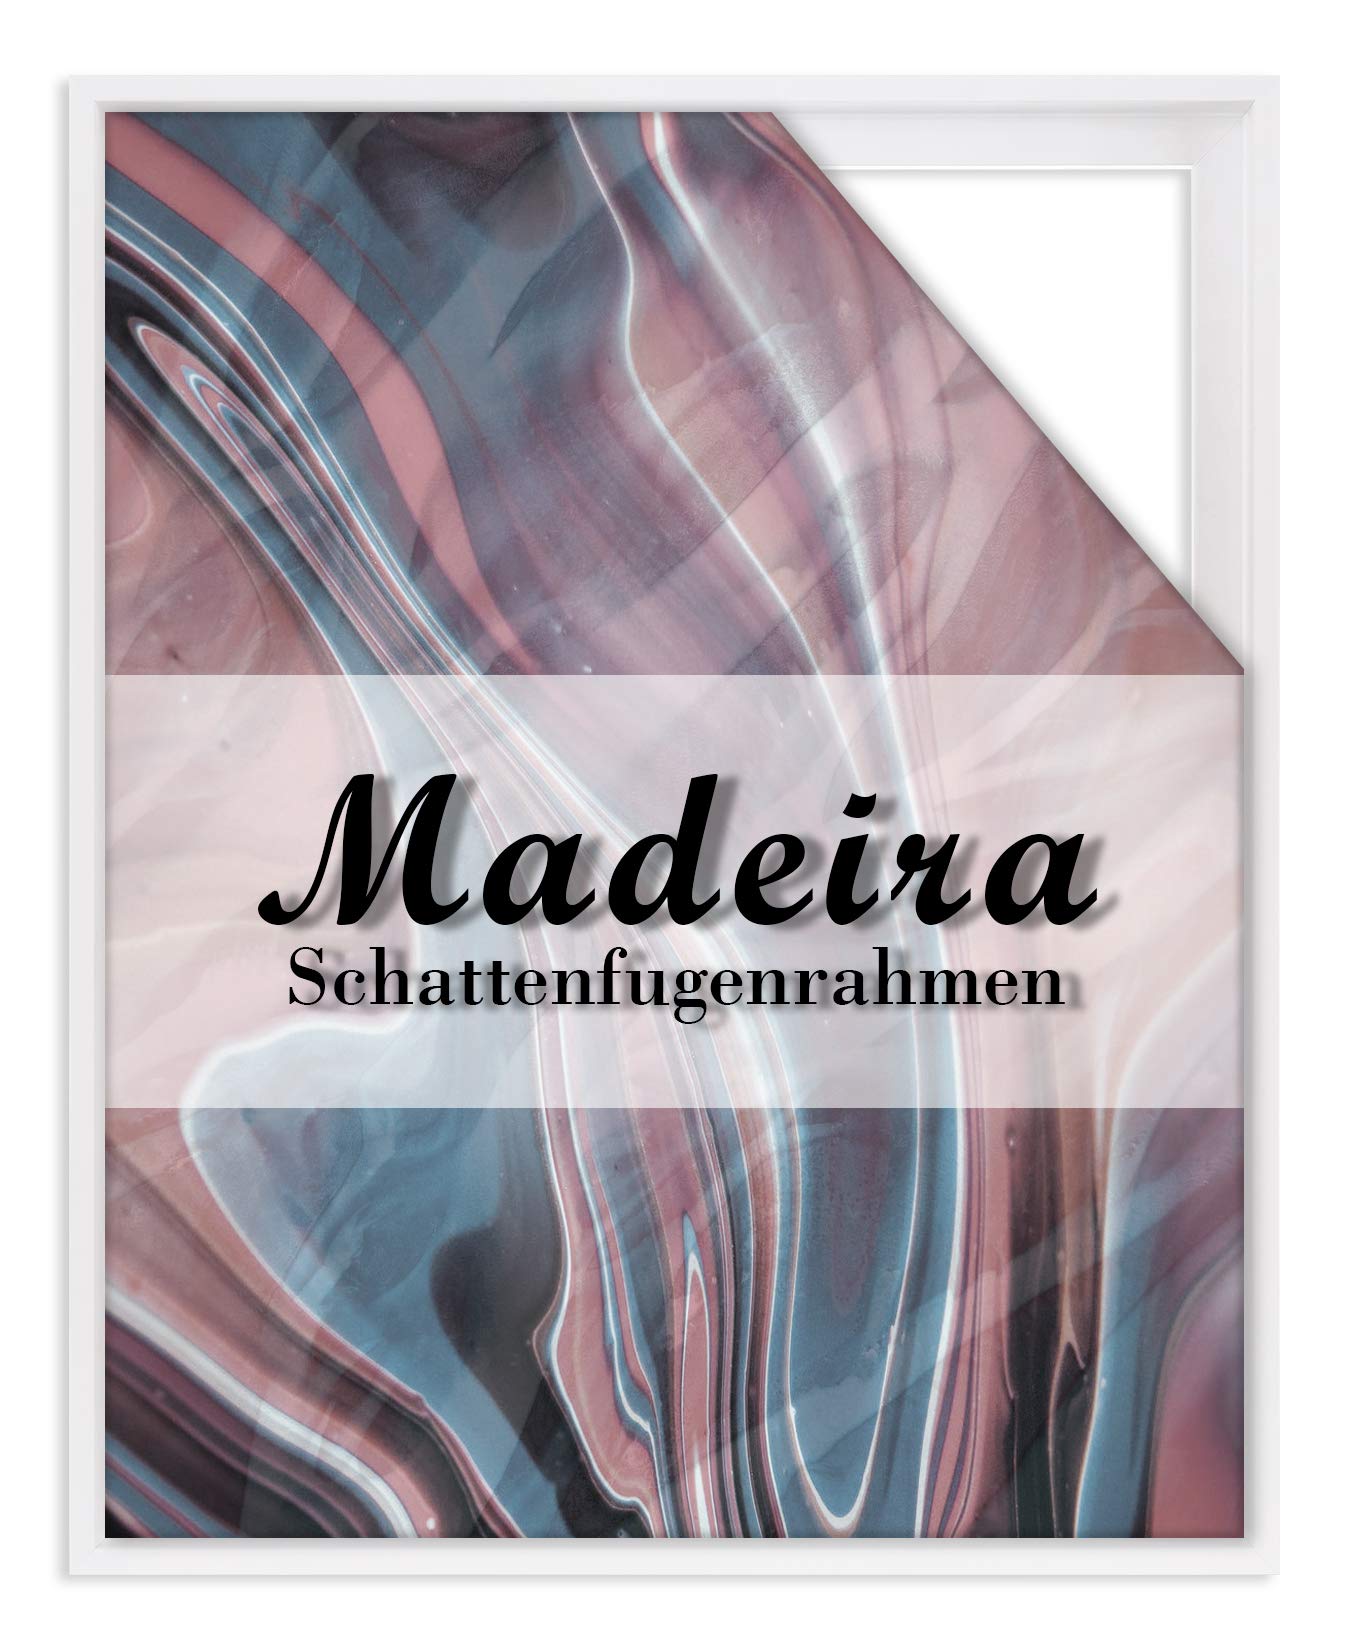 BIRAPA Madeira Schattenfugenrahmen für Leinwand 60x120 cm in Weiß, Holzrahmen, Rahmen für Leinwände, Leerrahmen für Leinwand, Schattenfugenrahmen für Keilrahmen